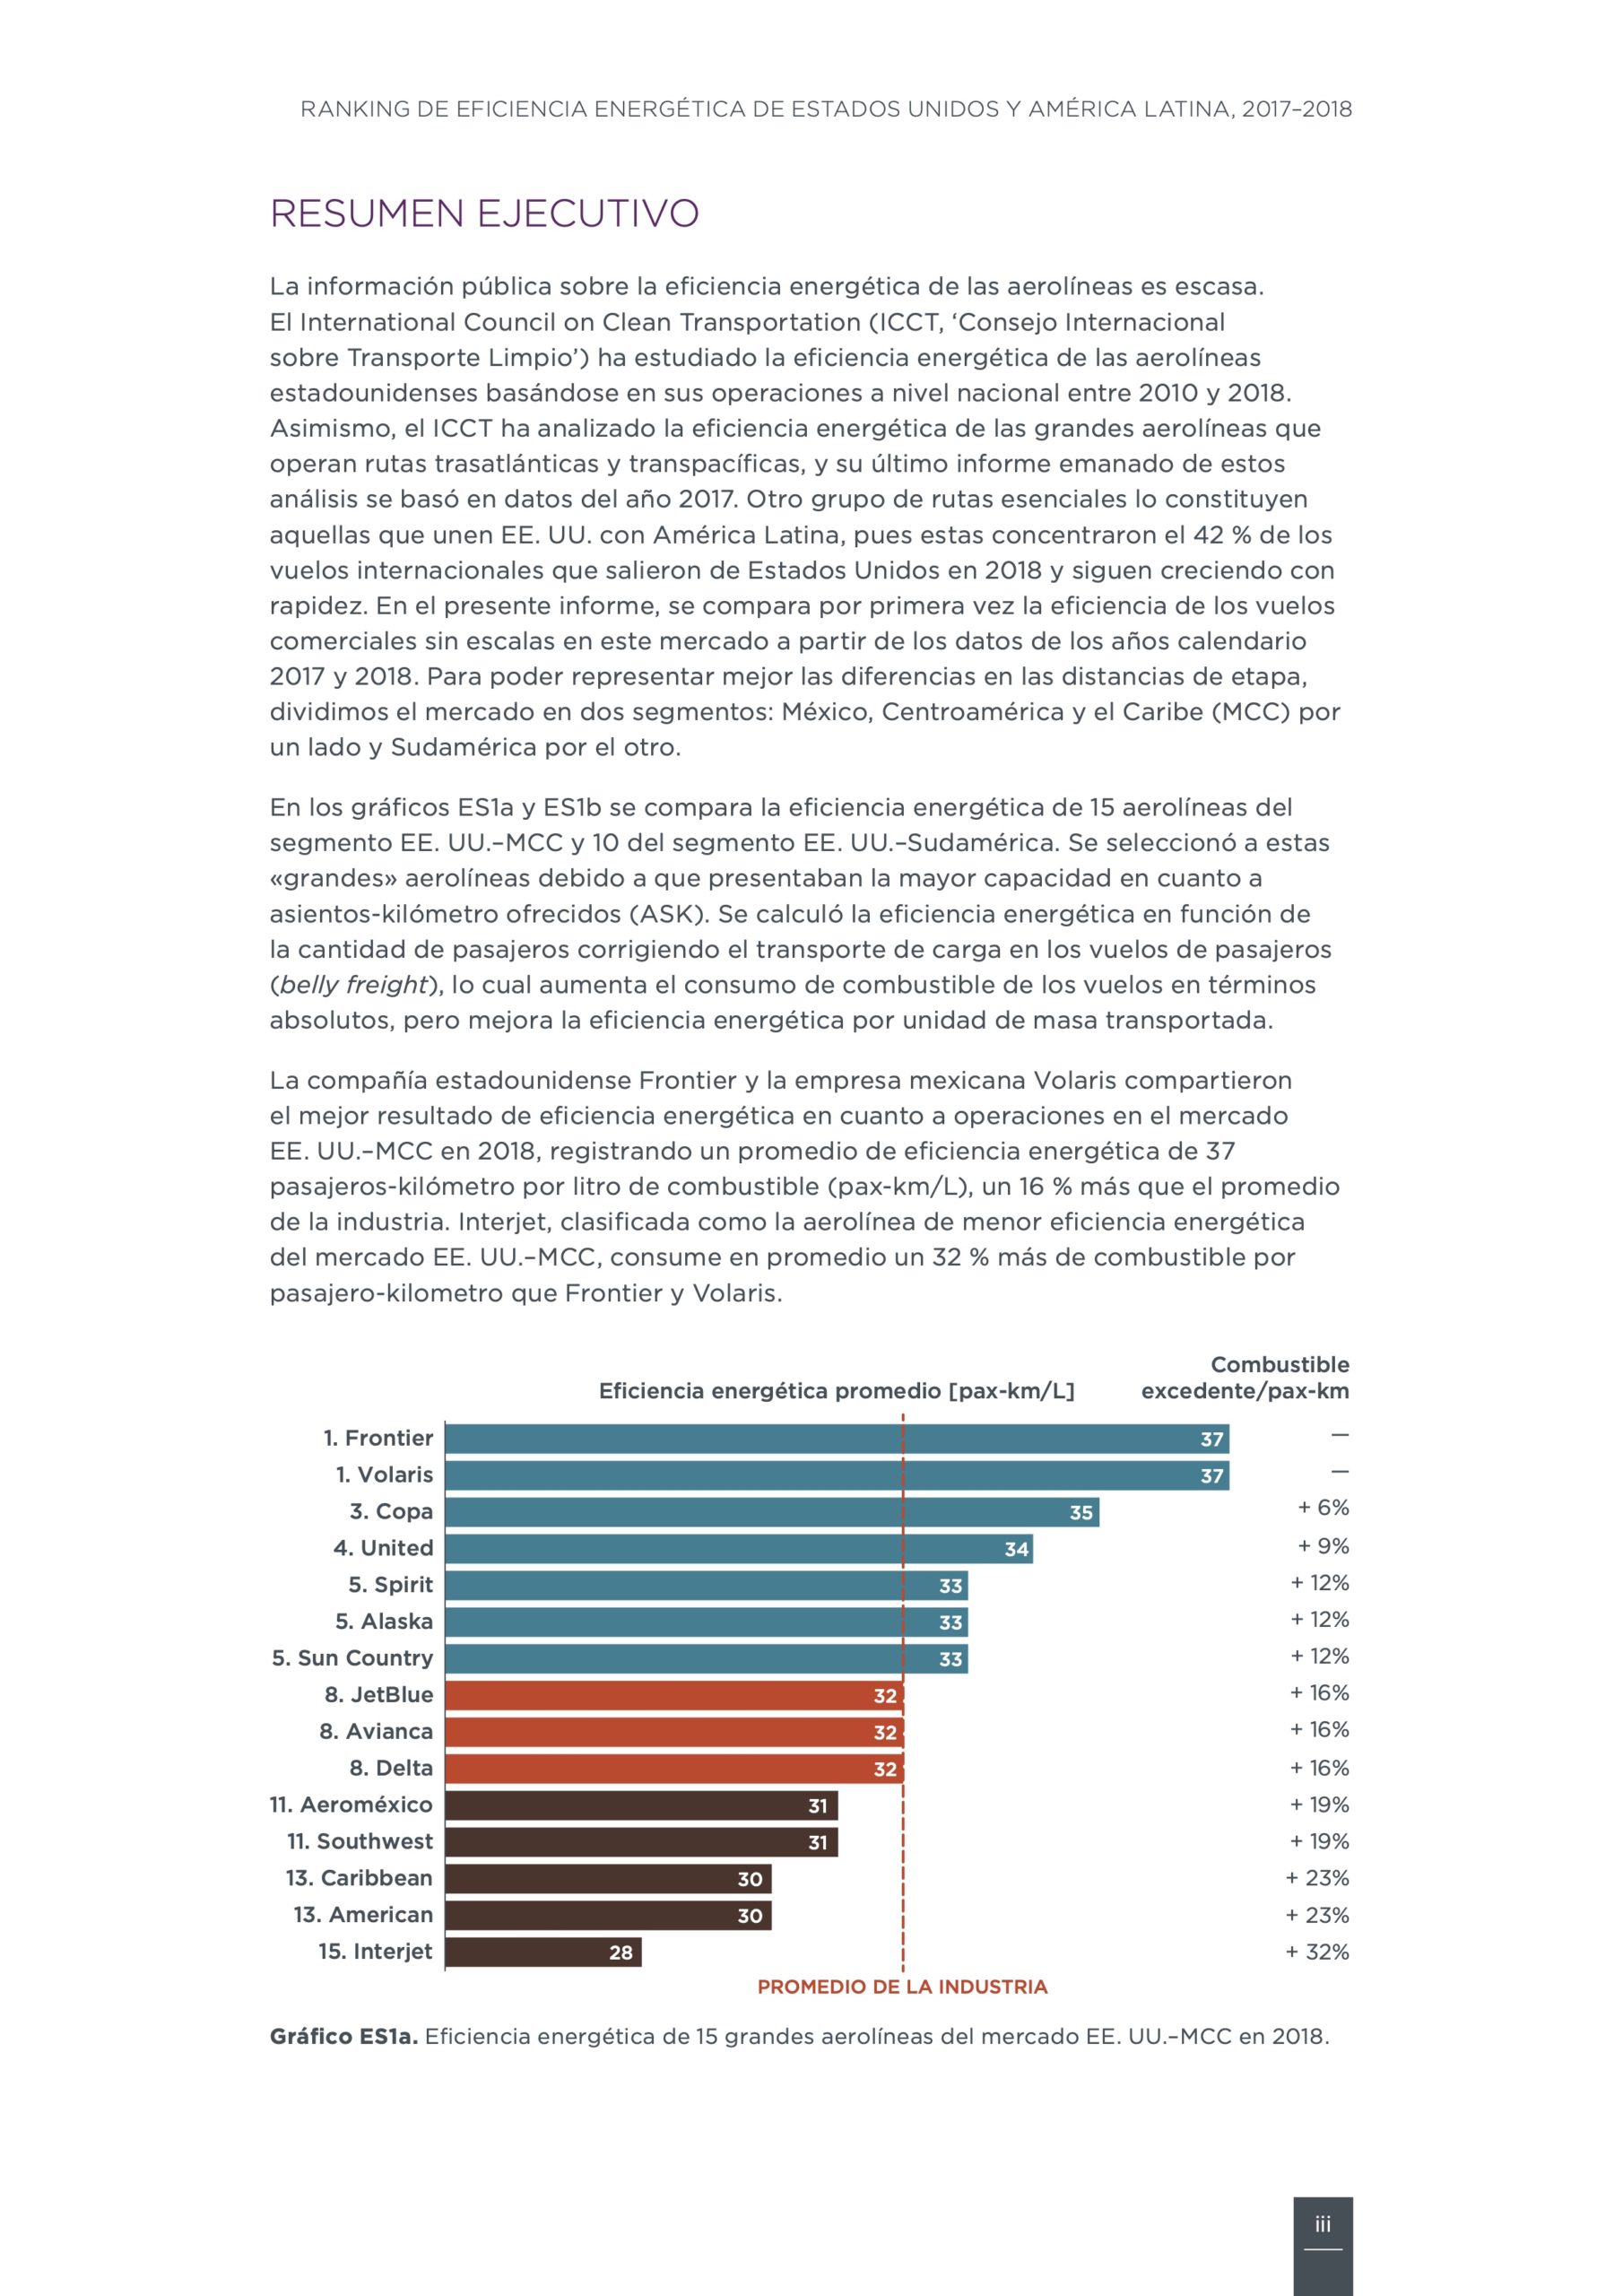 Ranking de eficiencia energética de aerolíneas de Estados Unidos y América Latina, 2017–2018 - Filigrana Traducciones